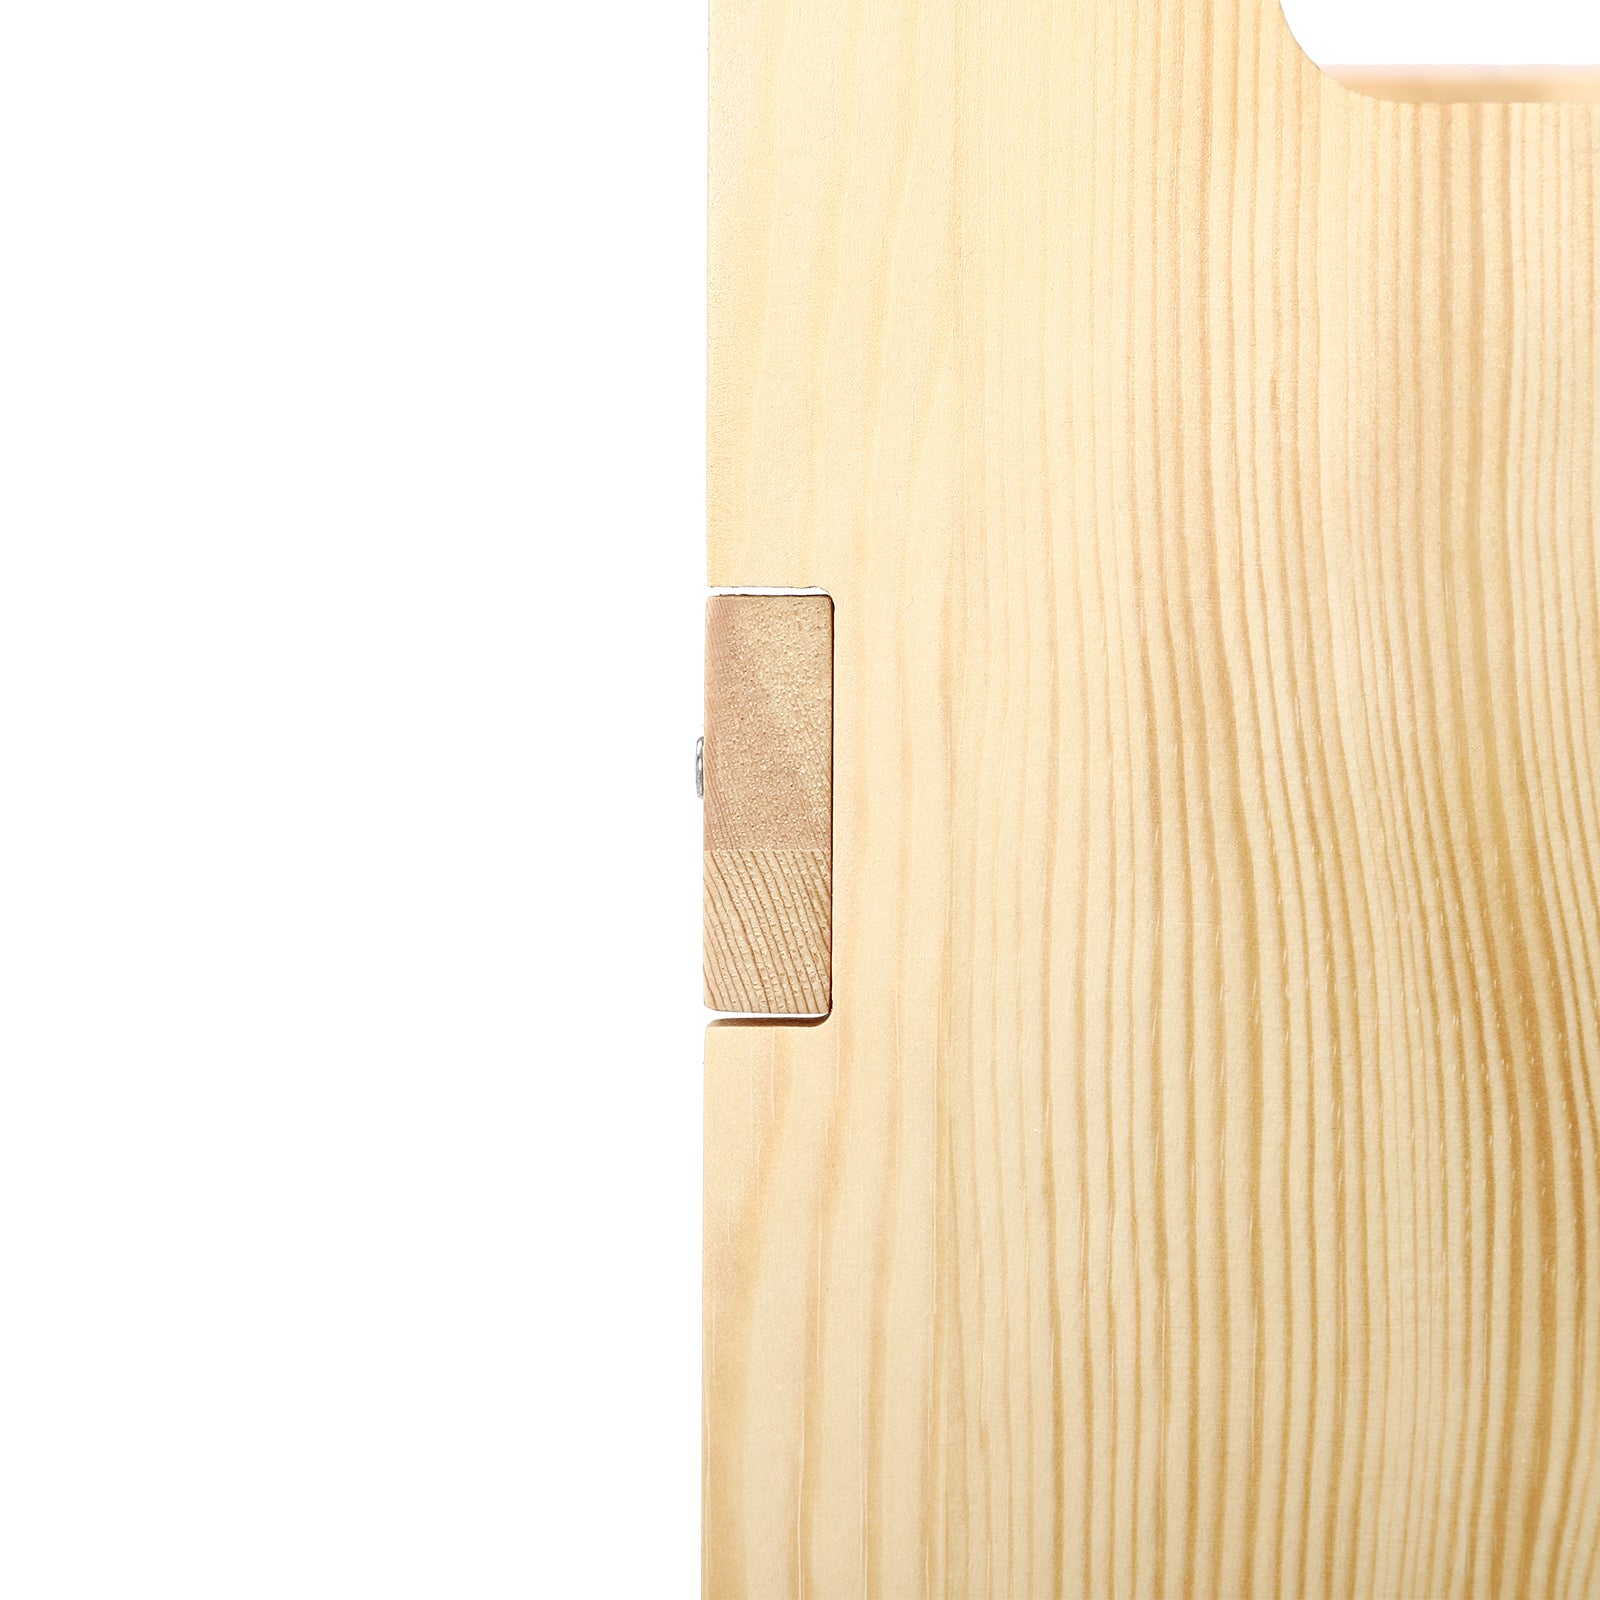 Étagère à épices en bois multifonction à 2 niveaux pour armoire/armoire intérieure de cuisine